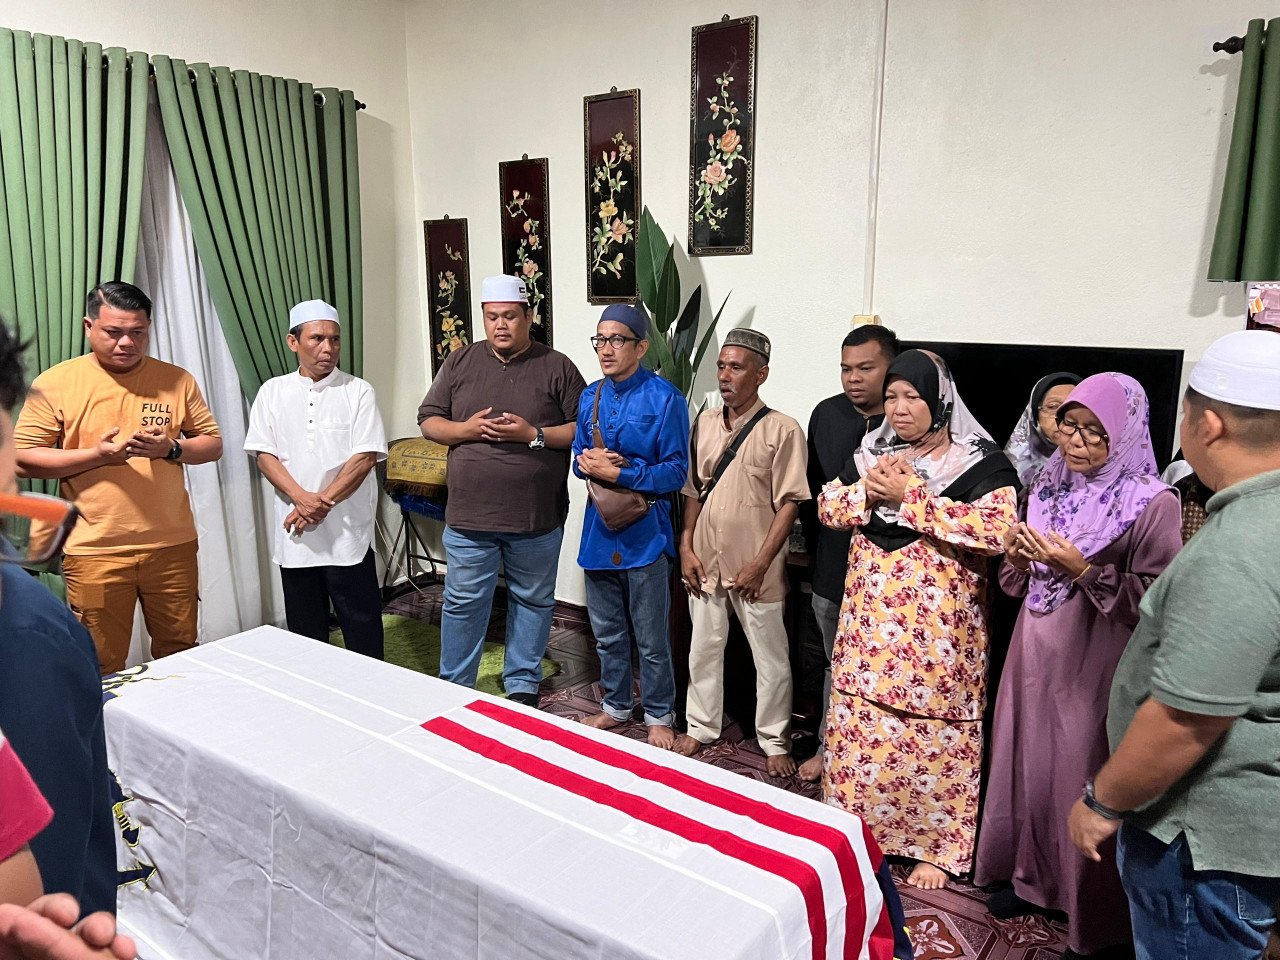 Ahli keluarga Allahyarham mendoakan kesejahteraan Muhammad Faisol Tamadun ketika jenazahnya tiba di rumah kakaknya di Kampung Tanjung - gambar Rafisqi Radhi